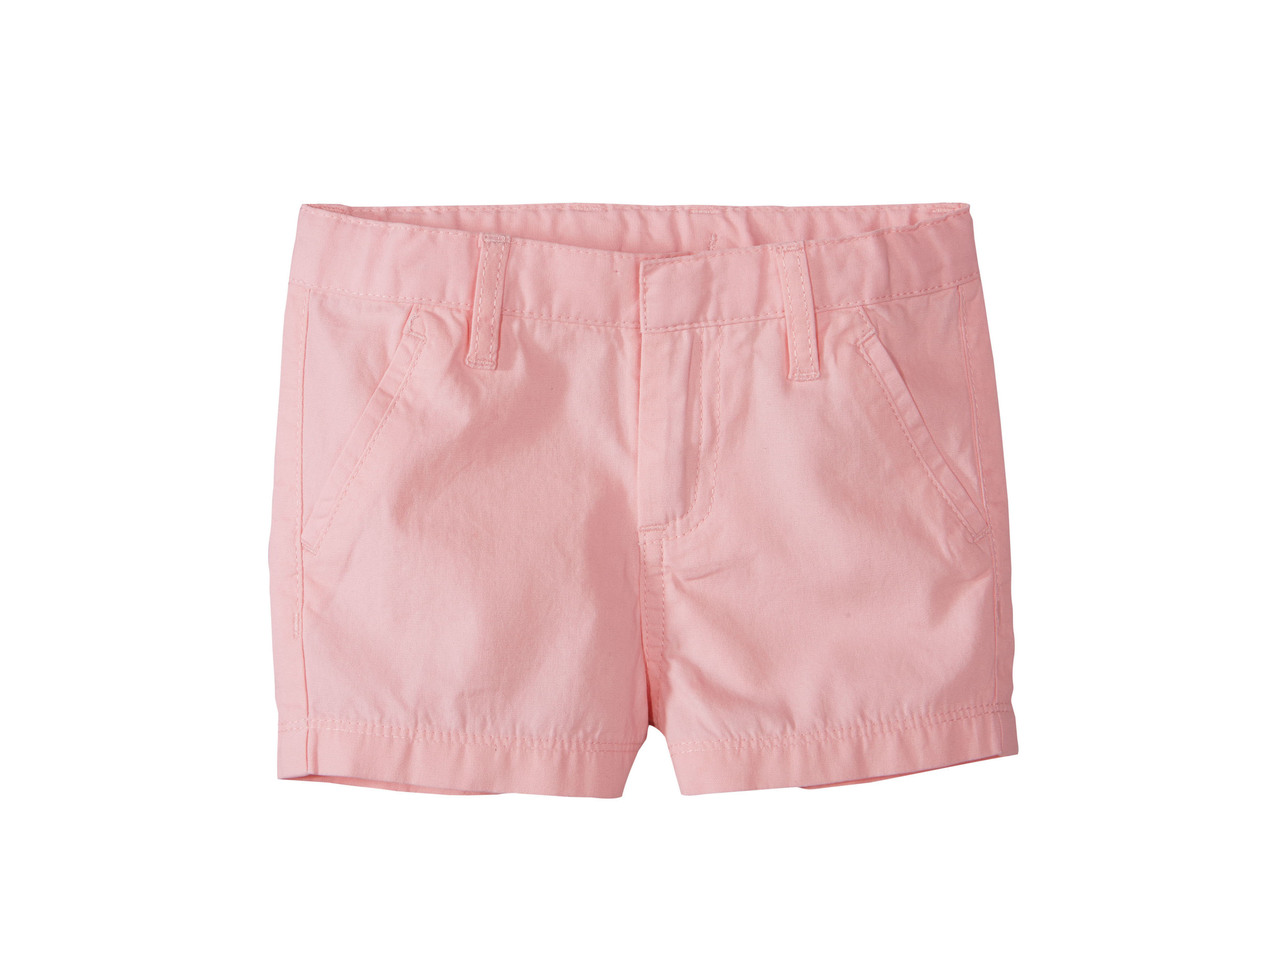 Girls' Skirt or Shorts